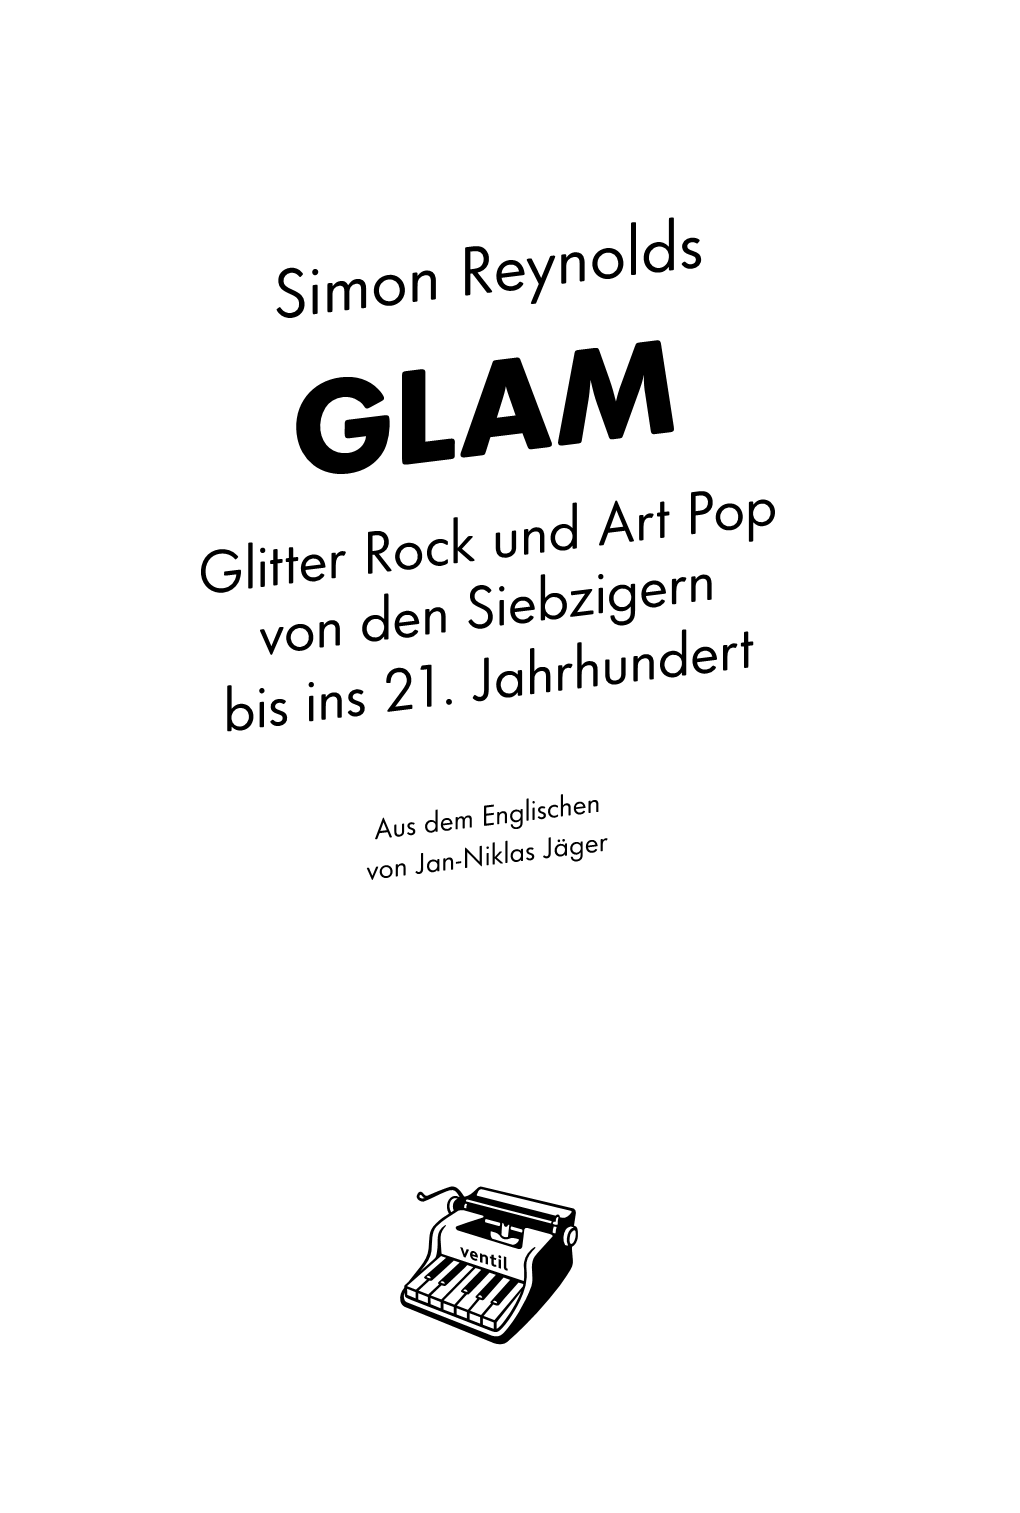 Simon Reynolds GLAM Glitter Rock Und Art Pop Von Den Siebzigern Bis Ins 21